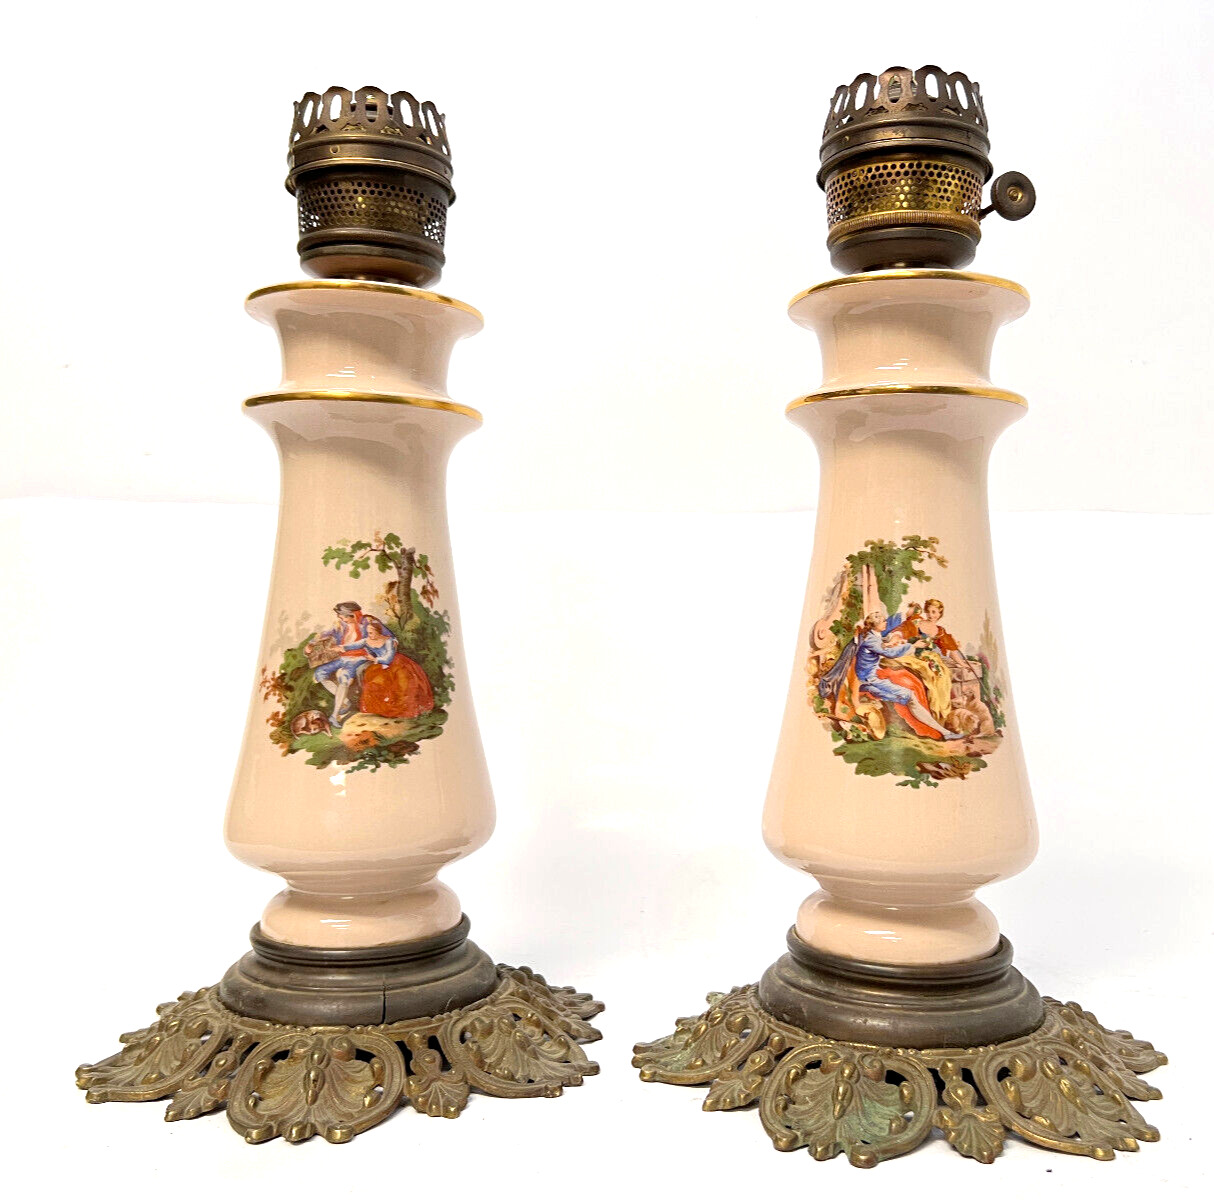 Paul Hanson Table Lamp Pair, Vintage Painted Porcelain & Brass, Antique Lanterns